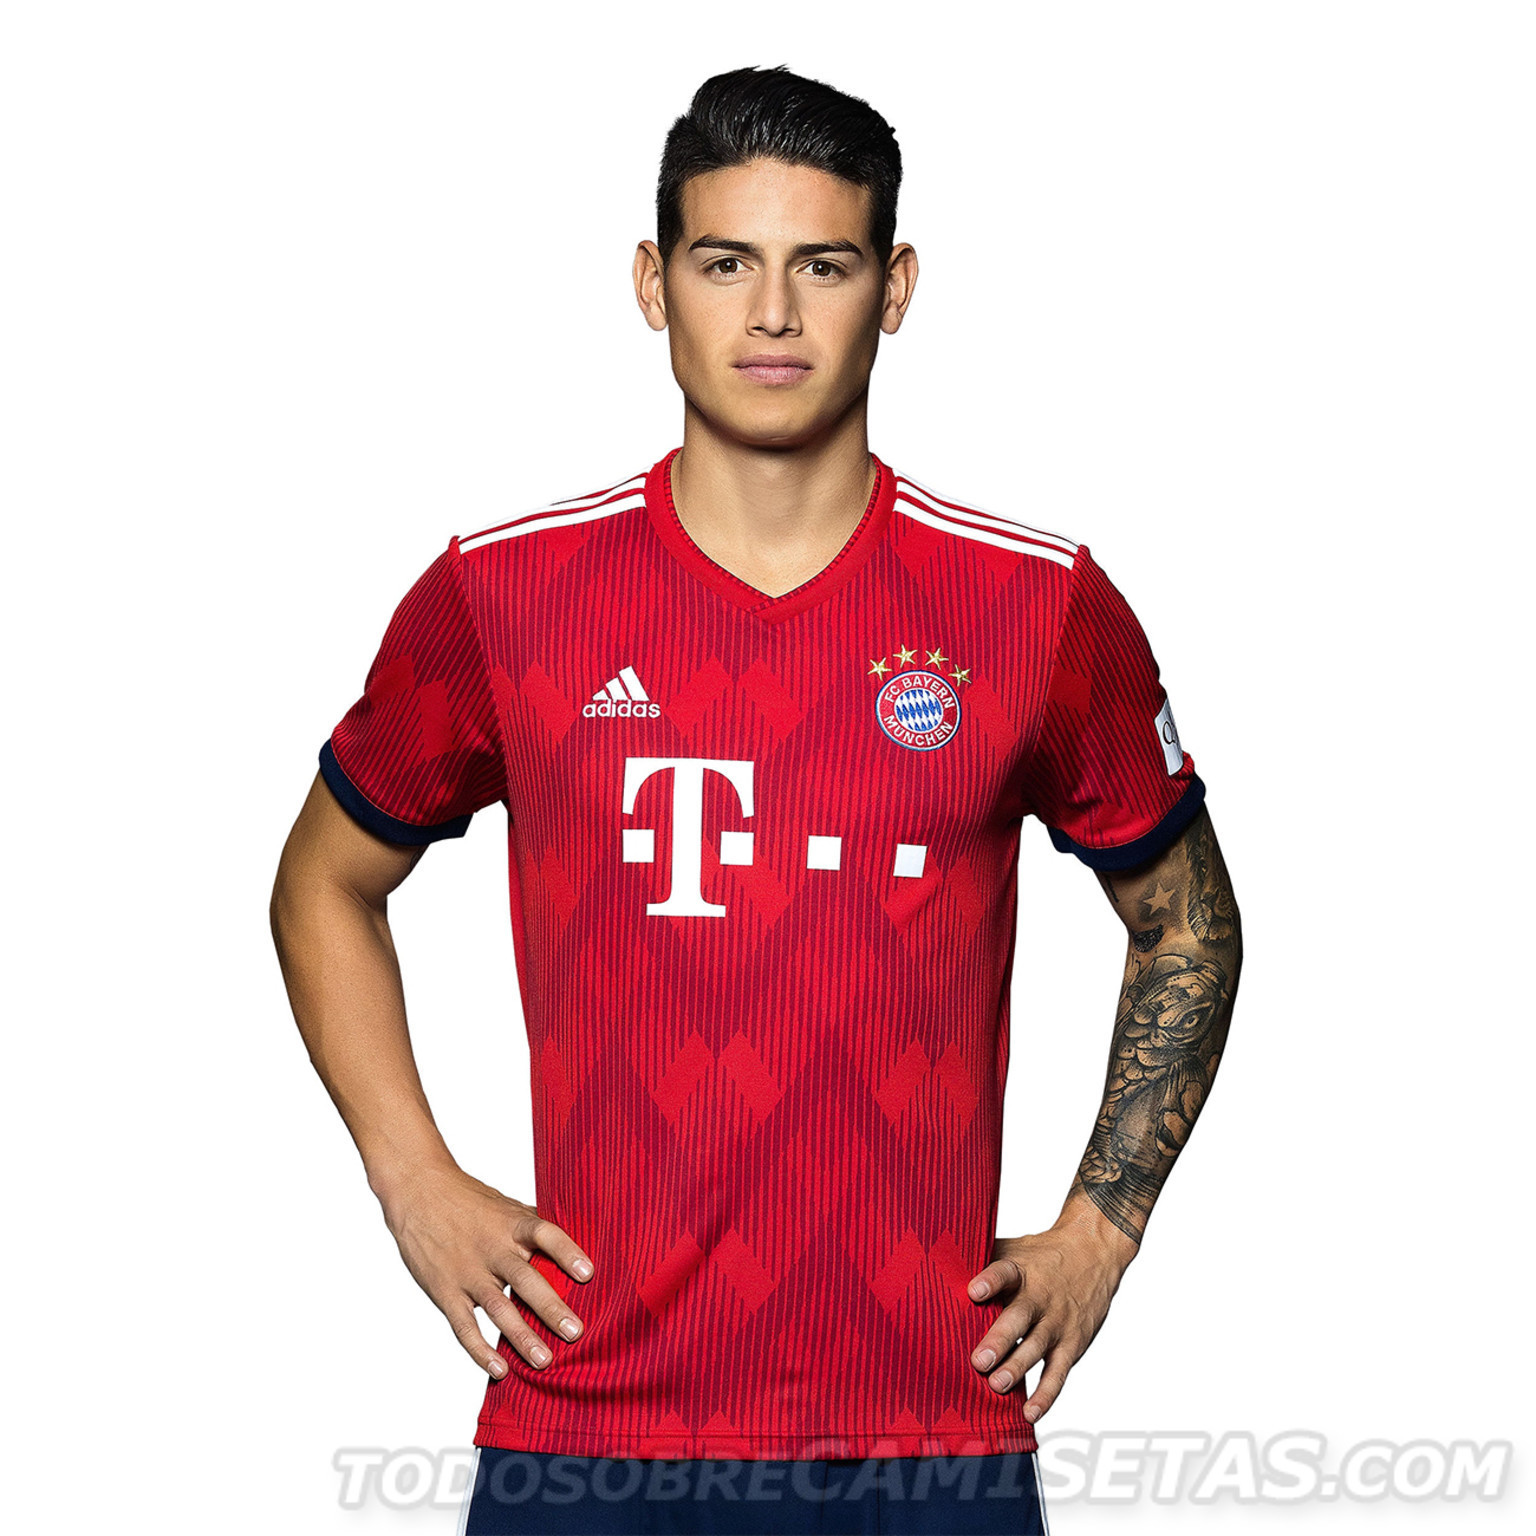 Bayern-Munich-2018-19-adidas-new-home-kit-5.jpg